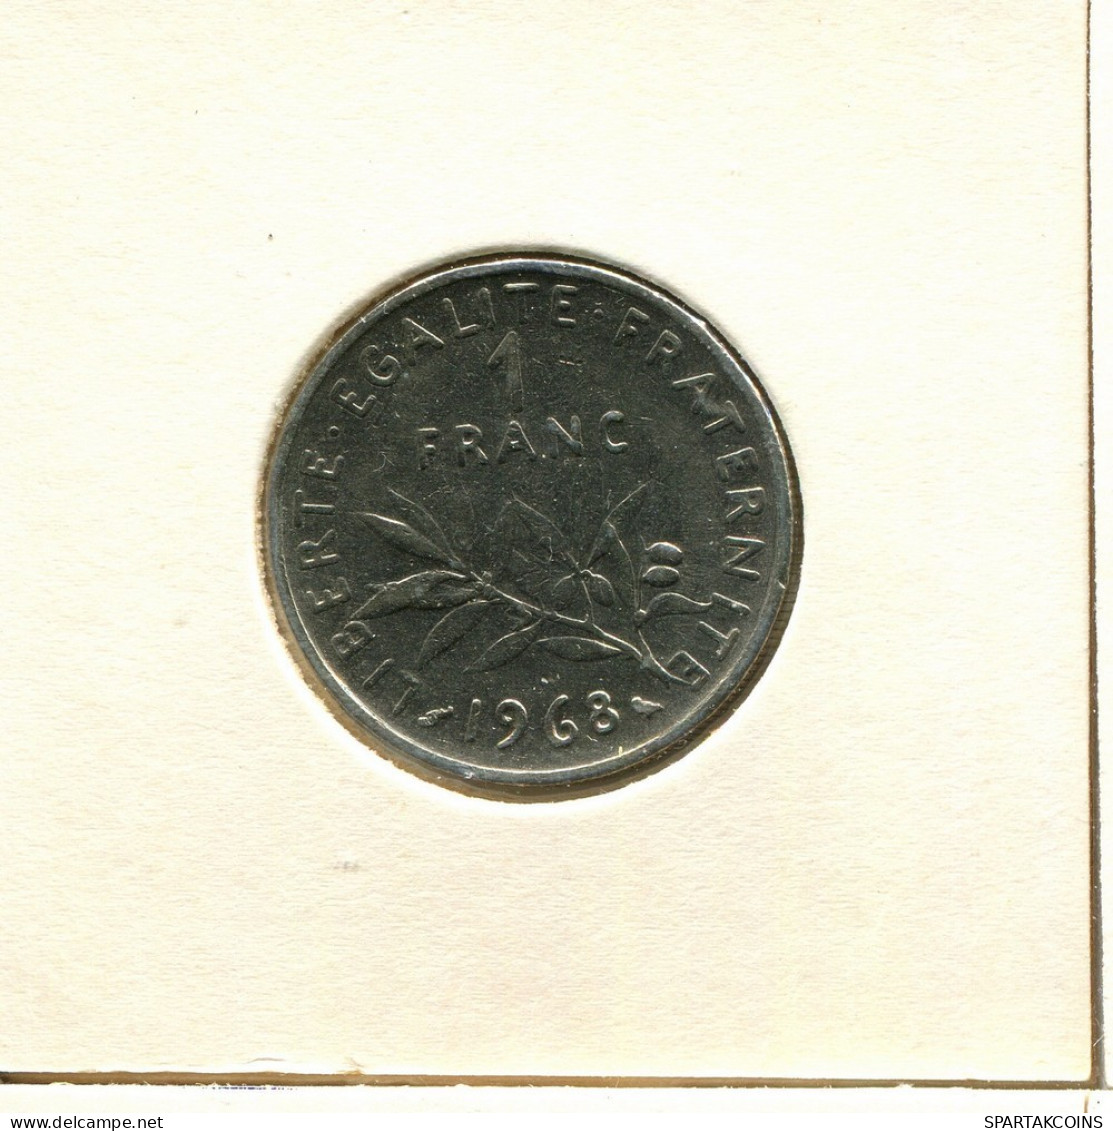 1 FRANC 1968 FRANCE Coin #BB550.U.A - 1 Franc